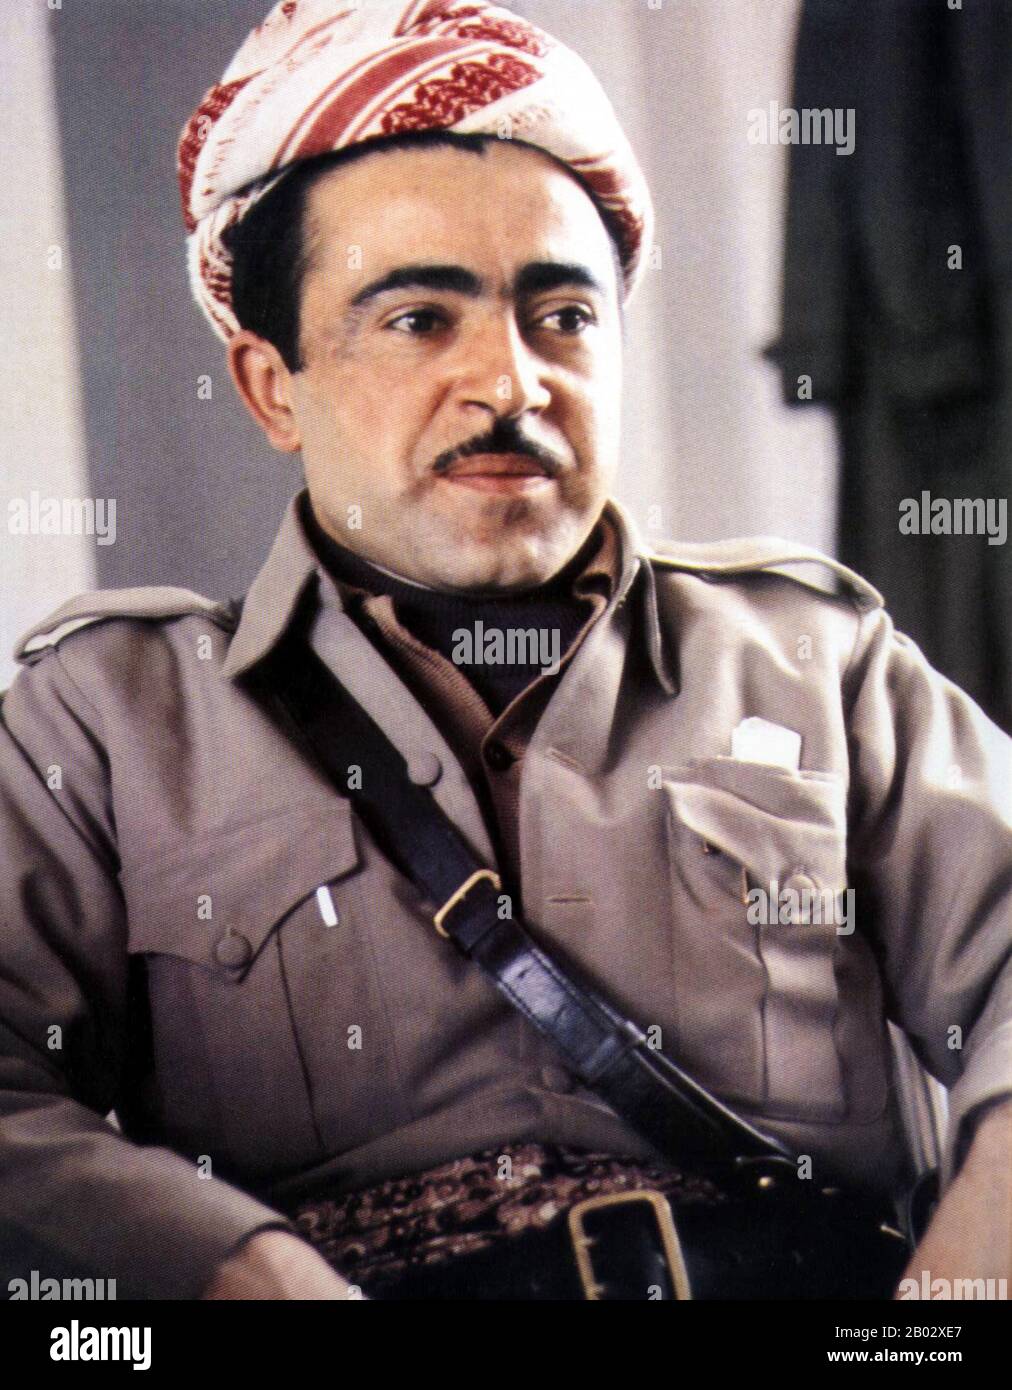 Idris Barzani (Kurdistan, 1944 – 31 gennaio 1987) è stato un . Era il fratello di Massoud Barzani, una nota figura curda, e il padre di Nechervan Idris Barzani. È stato inviato spesso in missioni diplomatiche per il Partito democratico curdo (KDP). Morì il 31 gennaio 1987, di un attacco di cuore. Foto Stock